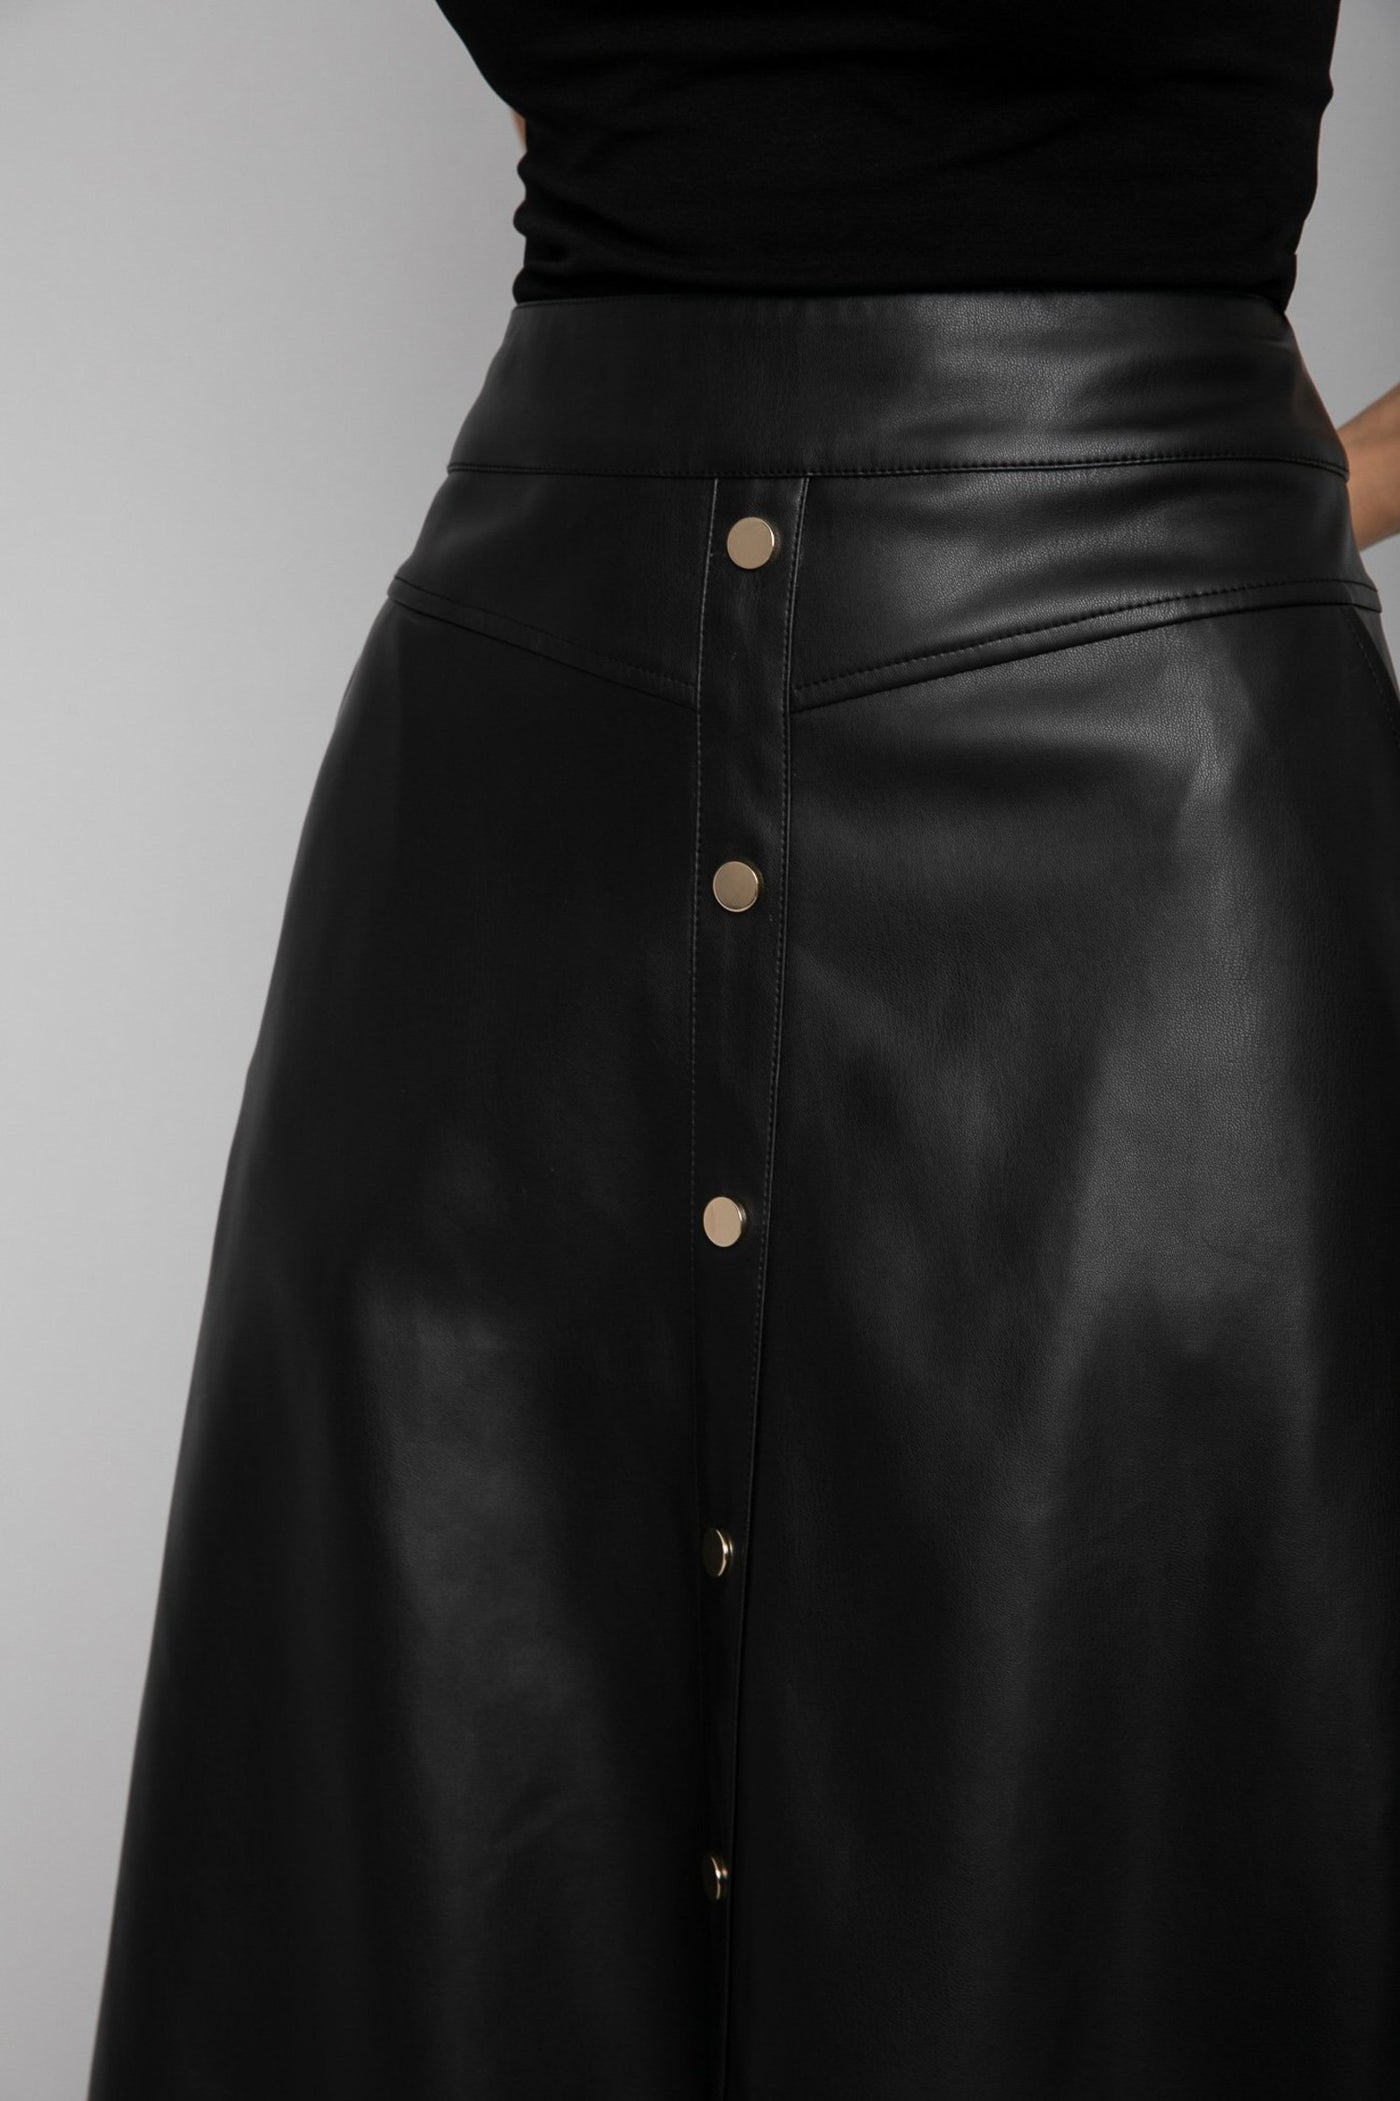 Leather Skirt - A-Line - Midi Length